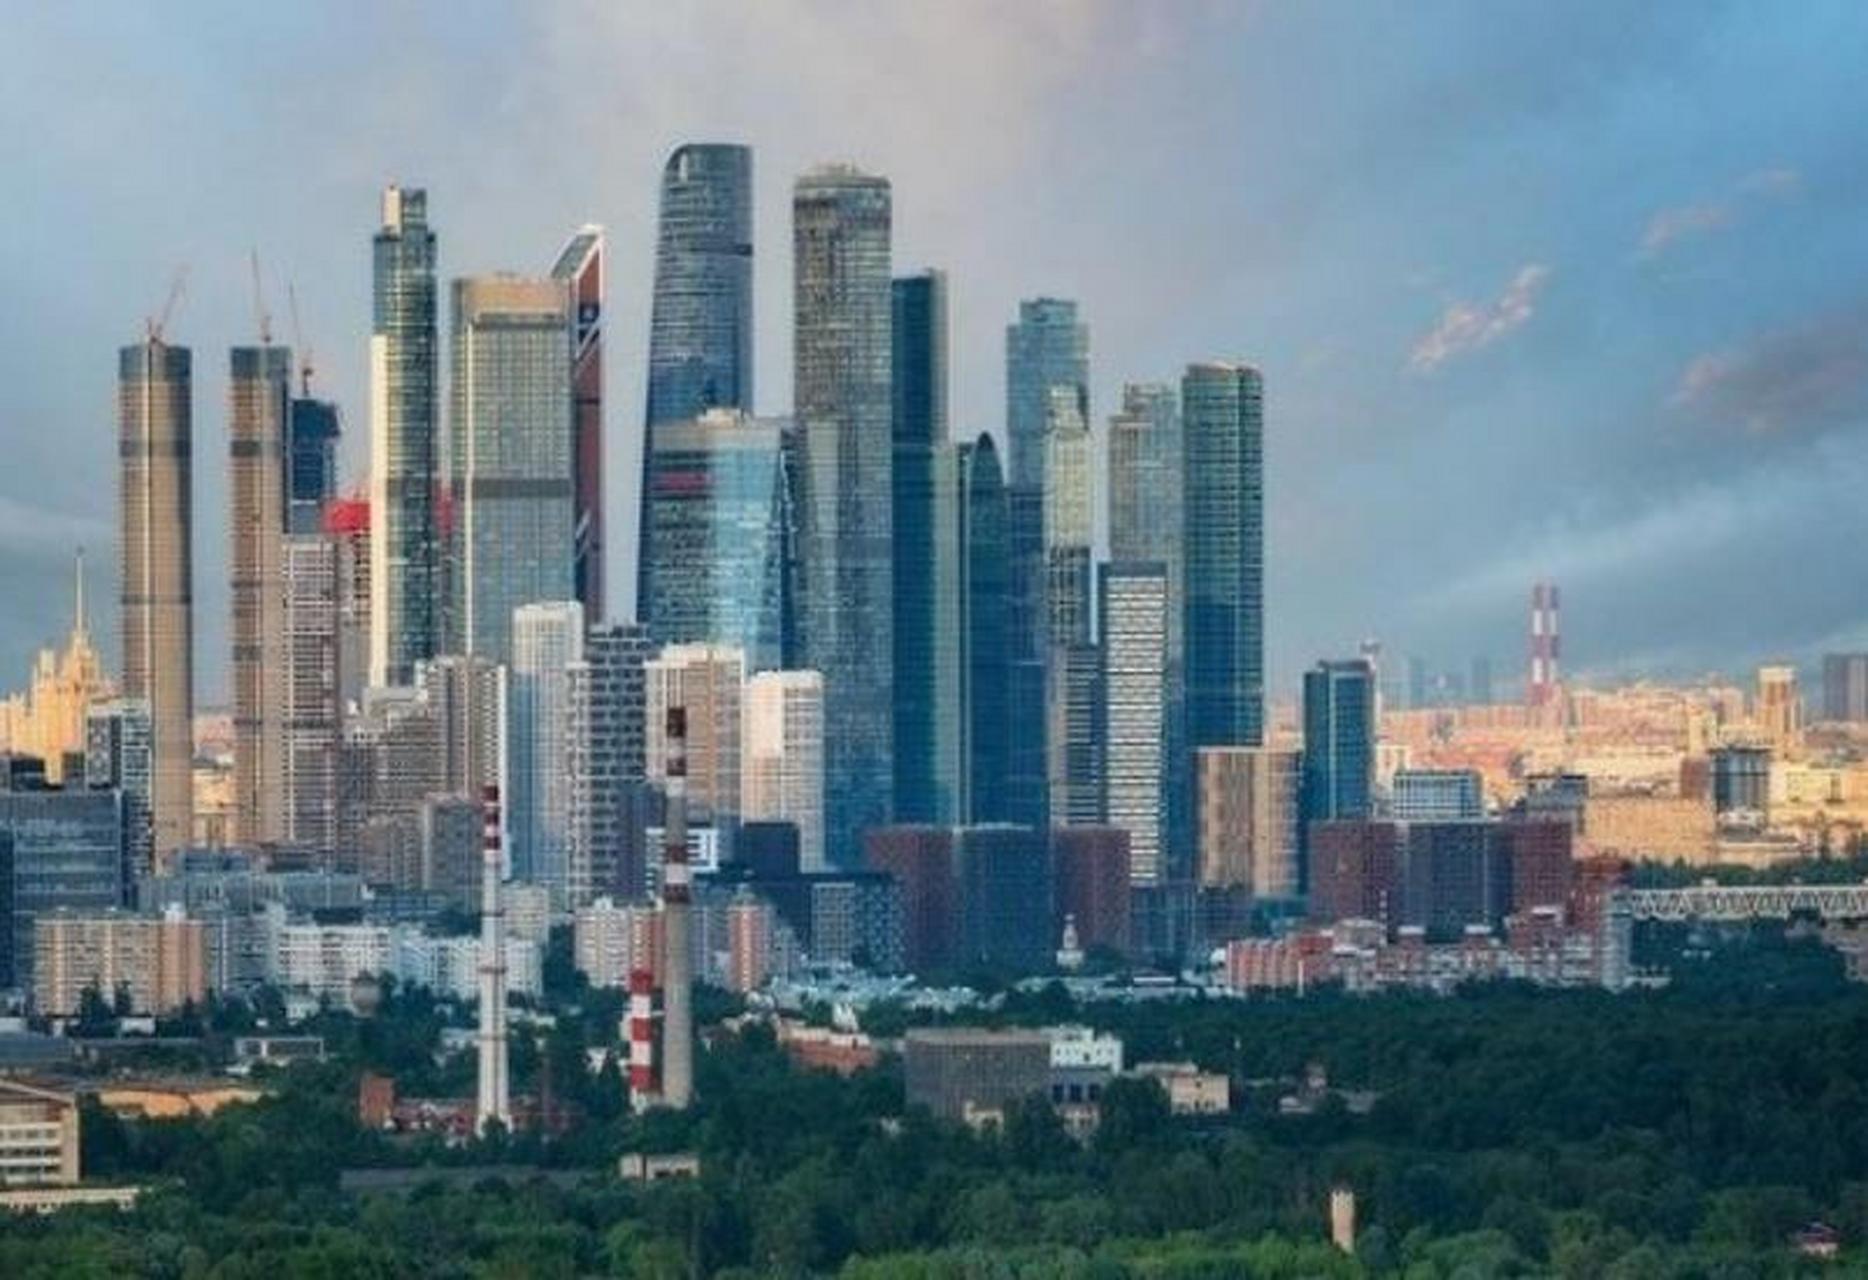 莫斯科cbd的高楼大厦,高楼的气势够震撼 这高楼够集中,这样的cbd真的